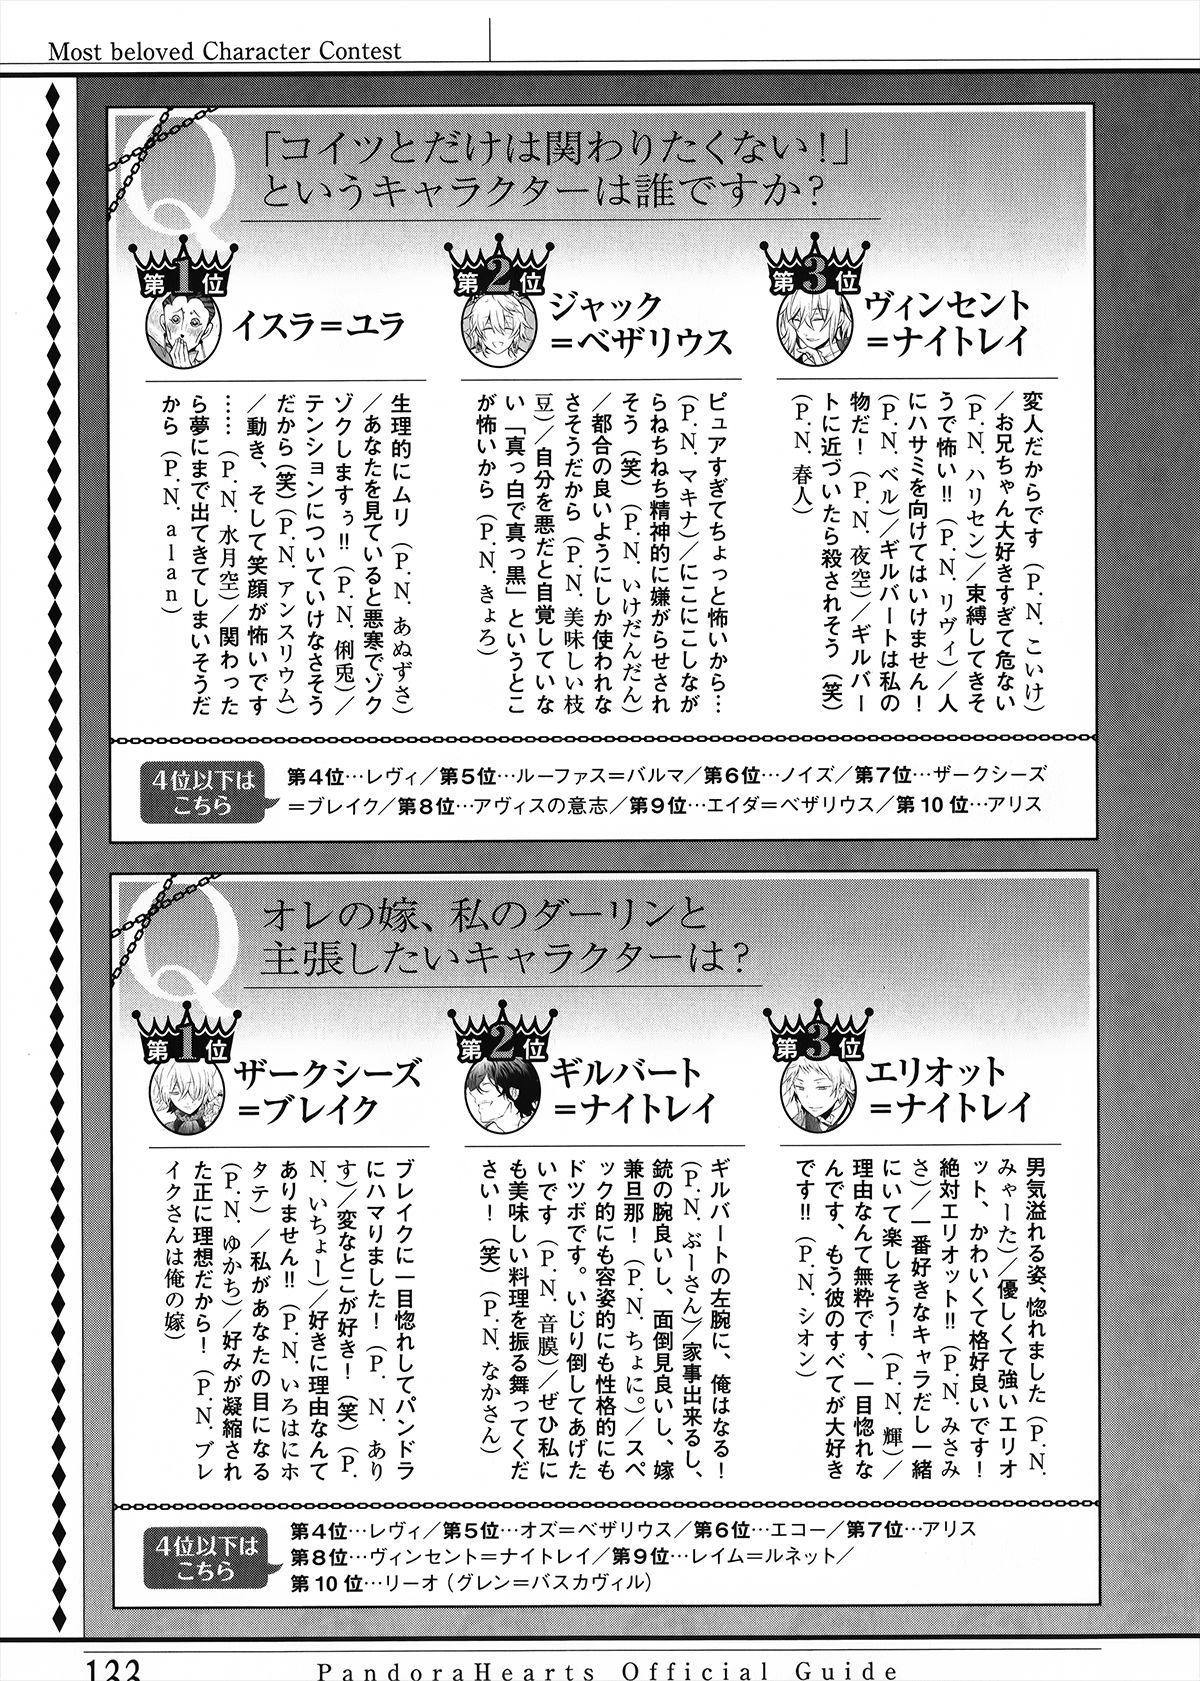 Pandora Hearts Guidebook 24+1: Last Dance パンドラハーツ オフィシャルガイド 24 + 1 ~Last Dance! 137